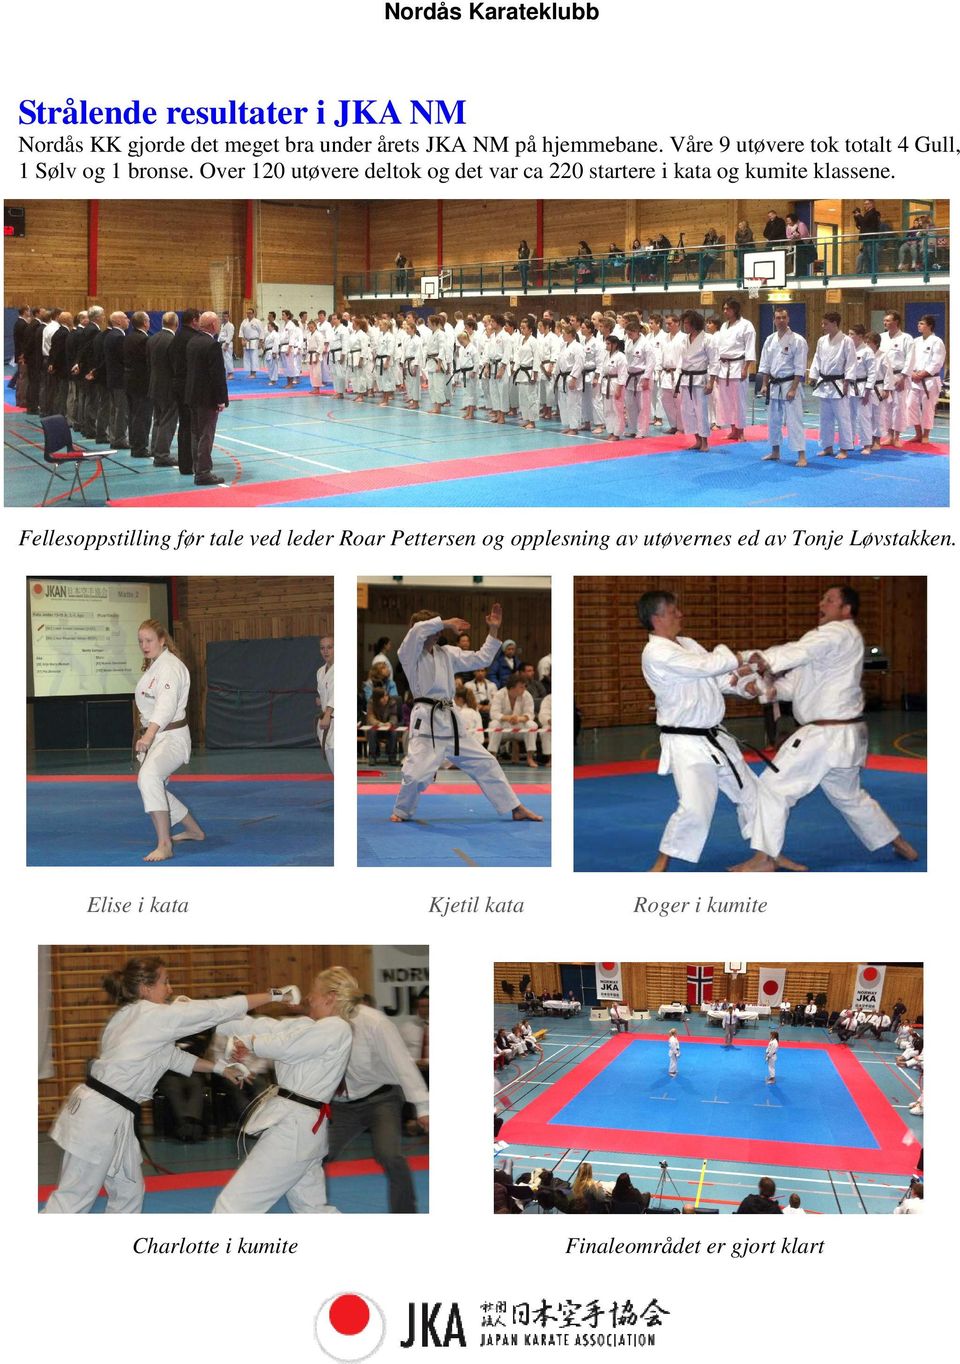 Over 120 utøvere deltok og det var ca 220 startere i kata og kumite klassene.